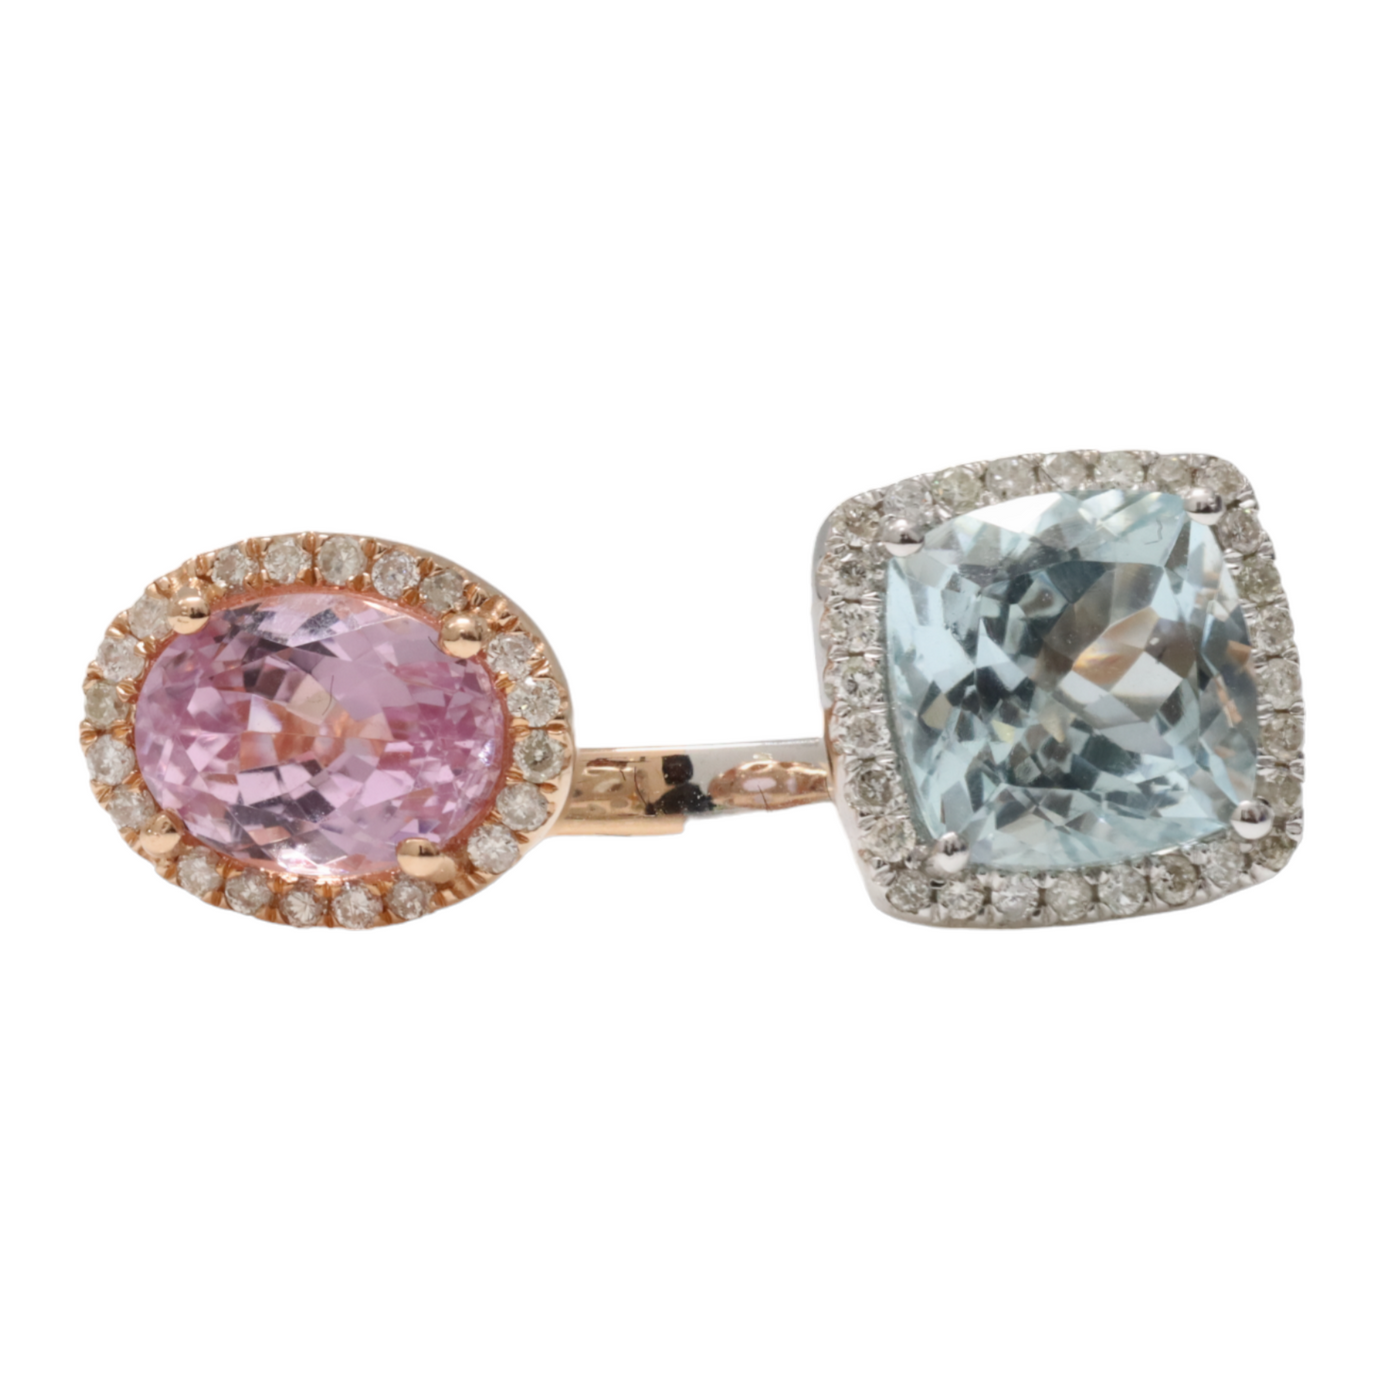 18ct Rose Gold, Aquamarine , Kunzite and Diamond ring